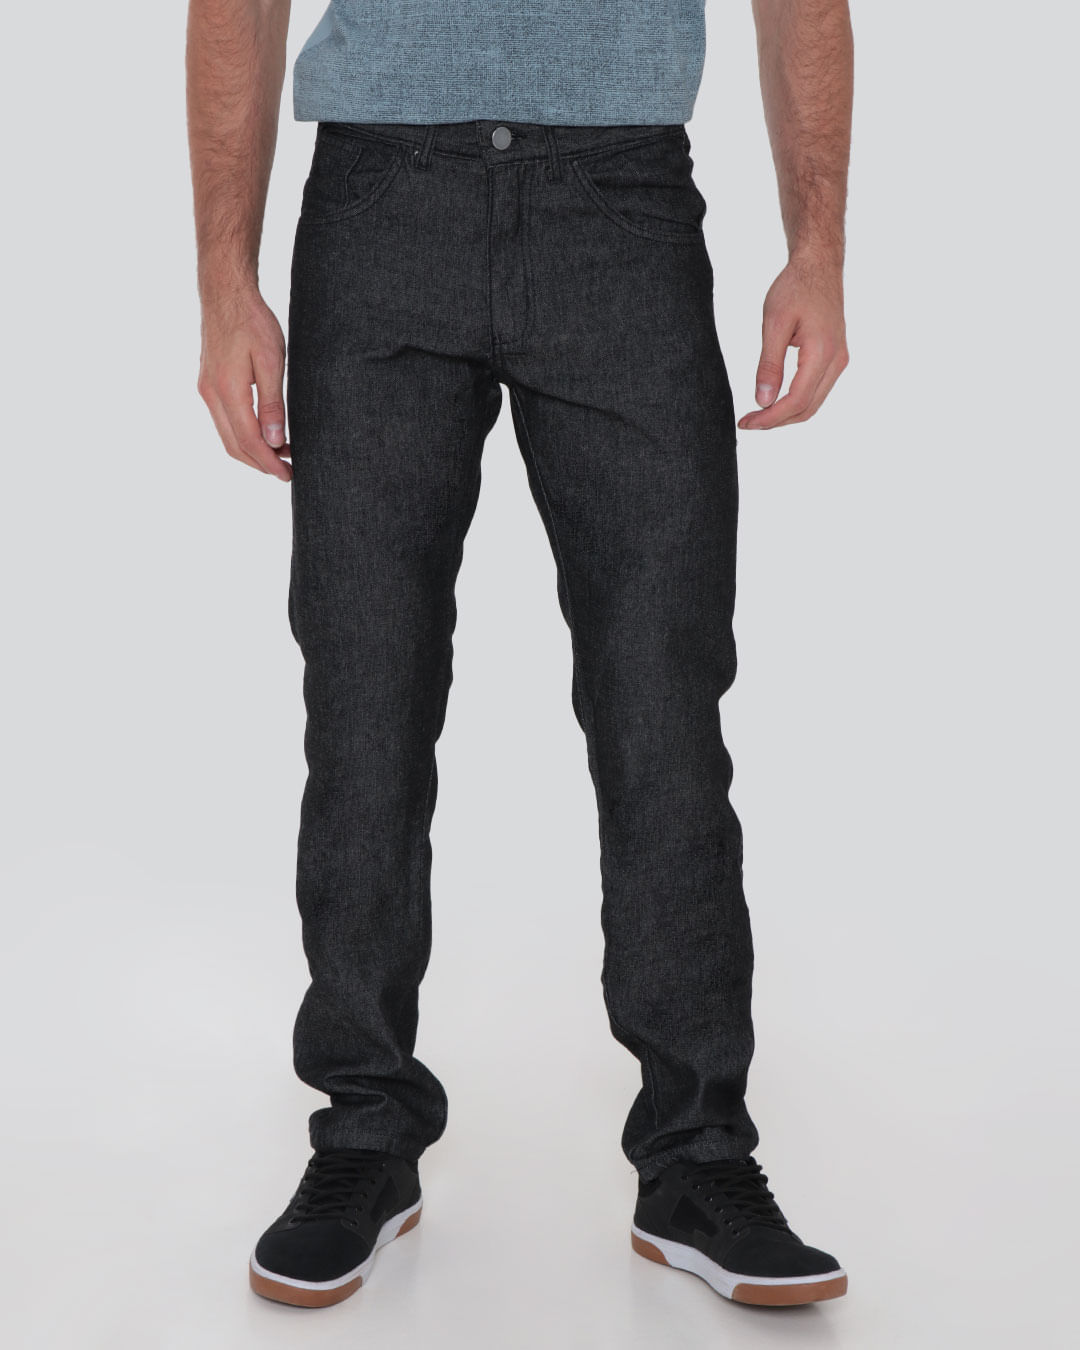 Calca-0211-Jeans-Black-Reta-Jv---Black-Jeans-Medio